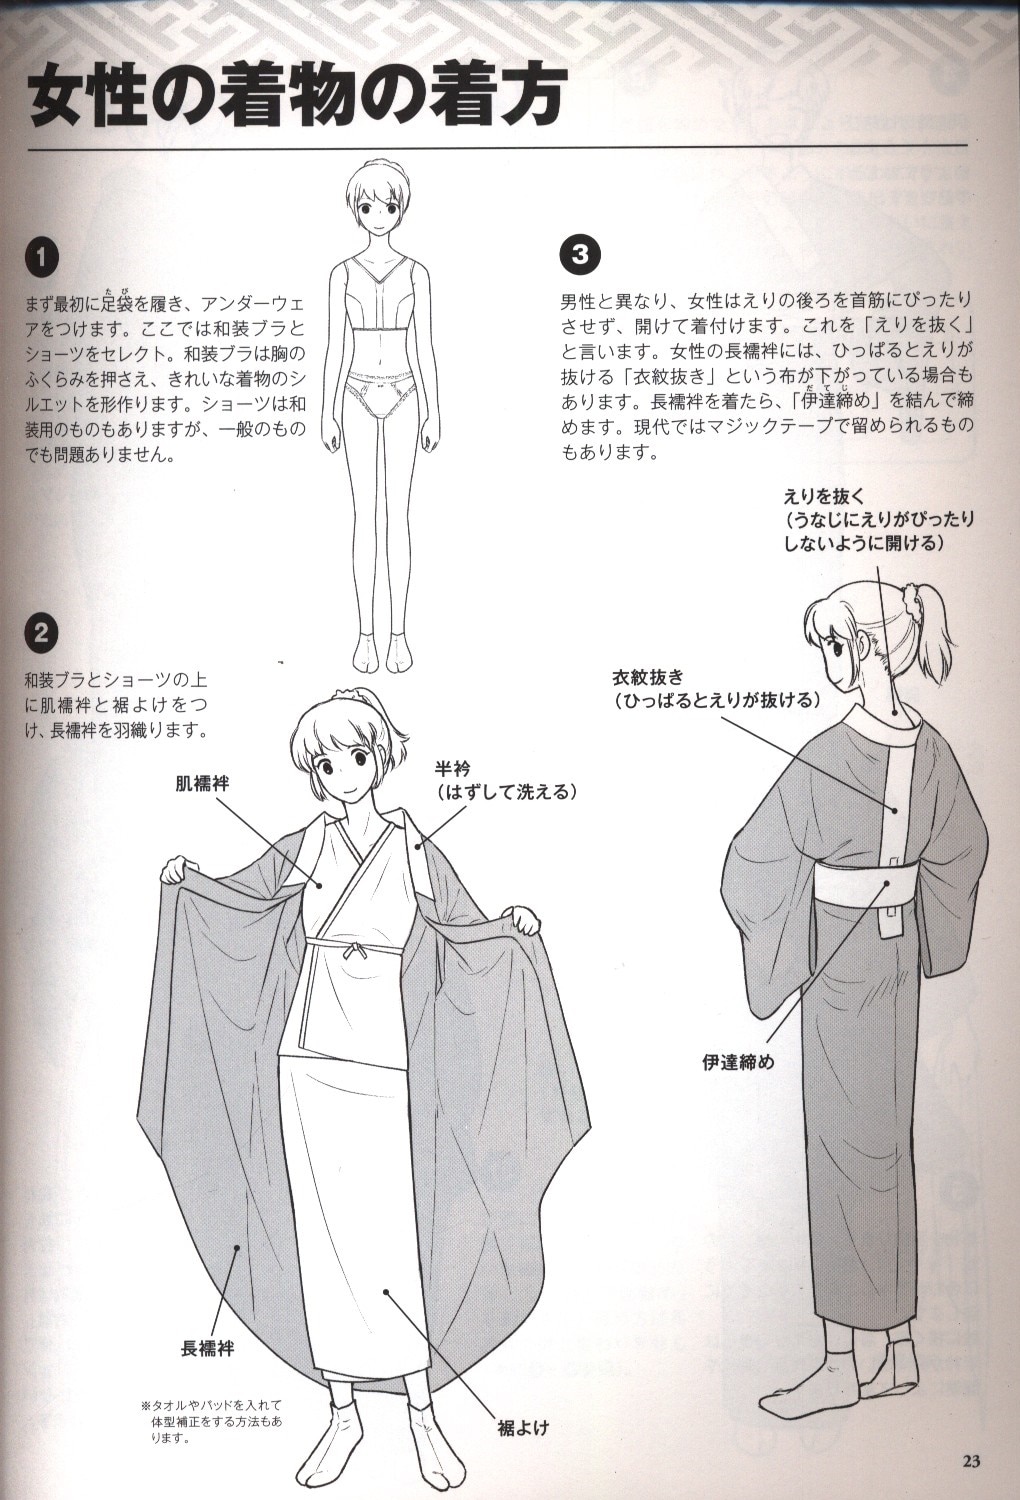 ホビージャパン 着物の描き方 基本からそれっぽく描くポイントまで まんだらけ Mandarake